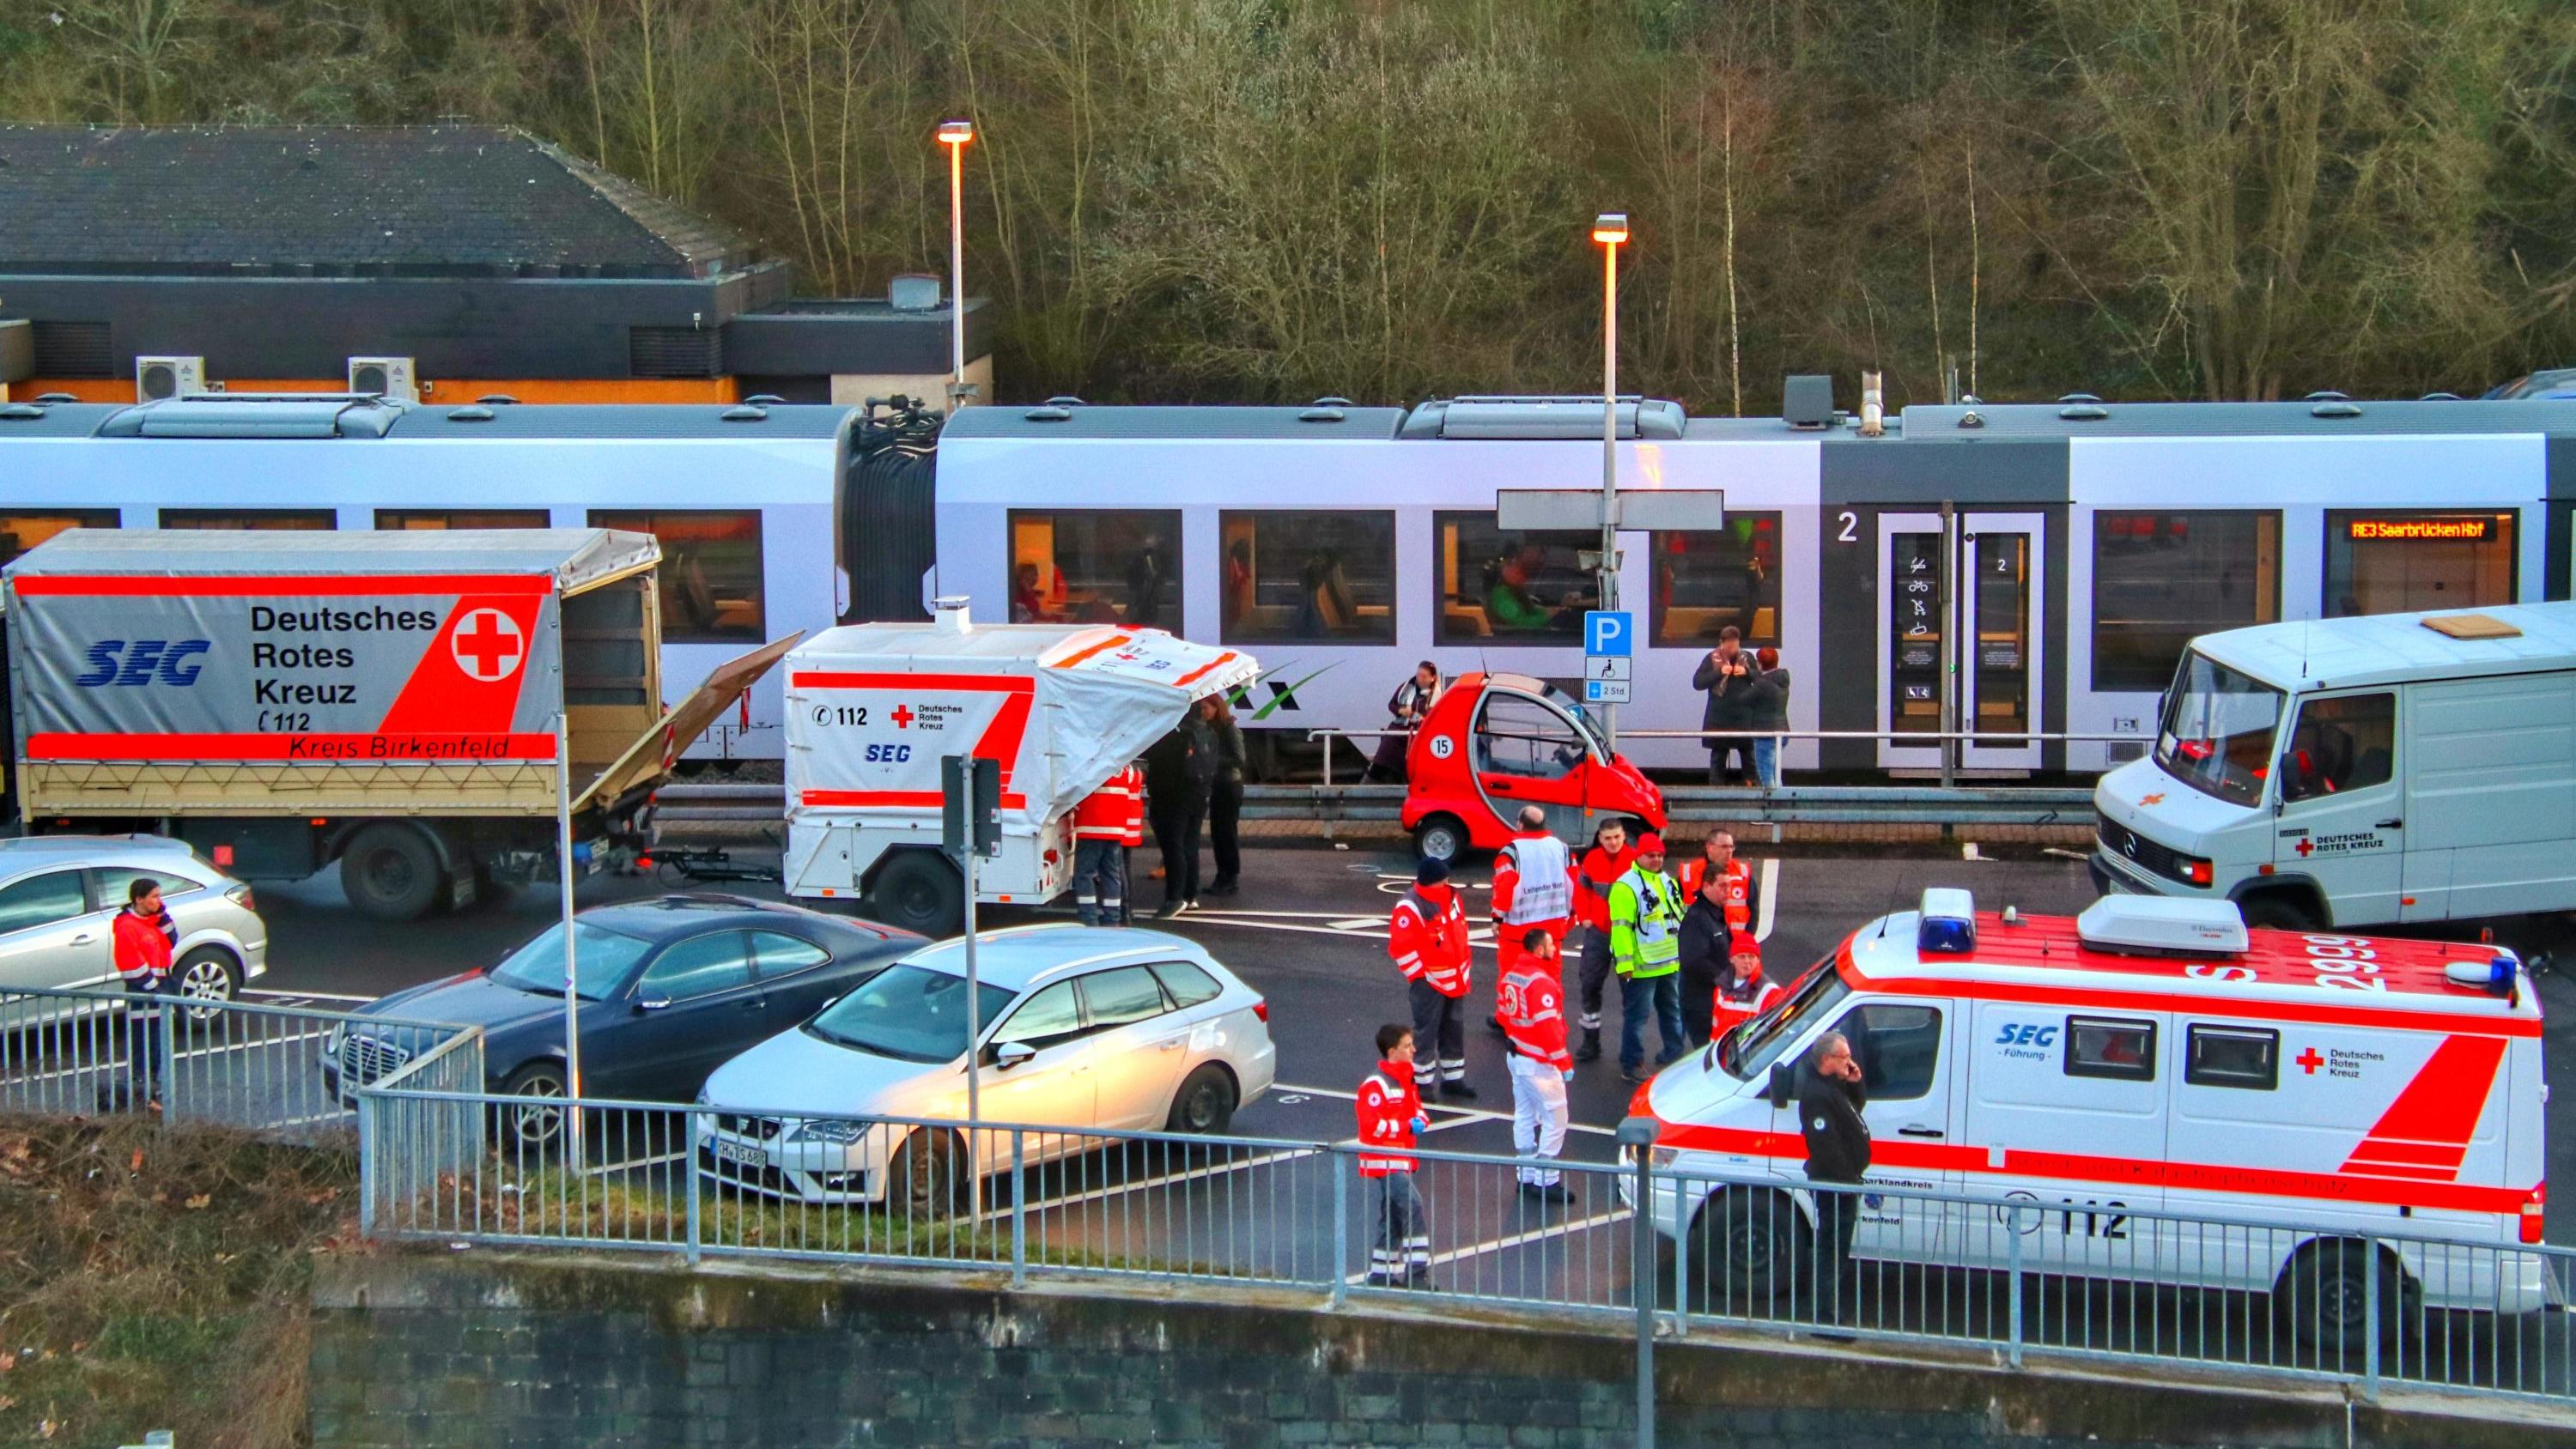 26.02.2020, Rheinland-Pfalz, Idar-Oberstein: Rettungssanitäter stehen am Bahnhof. Die Bundespolizei in Idar-Oberstein hatte hier einen Regionalzug mit etwa 70 Fahrgästen wegen Coronavirus-Verdachts gestoppt. Es habe einen Hinweis gegeben, dass ein Re